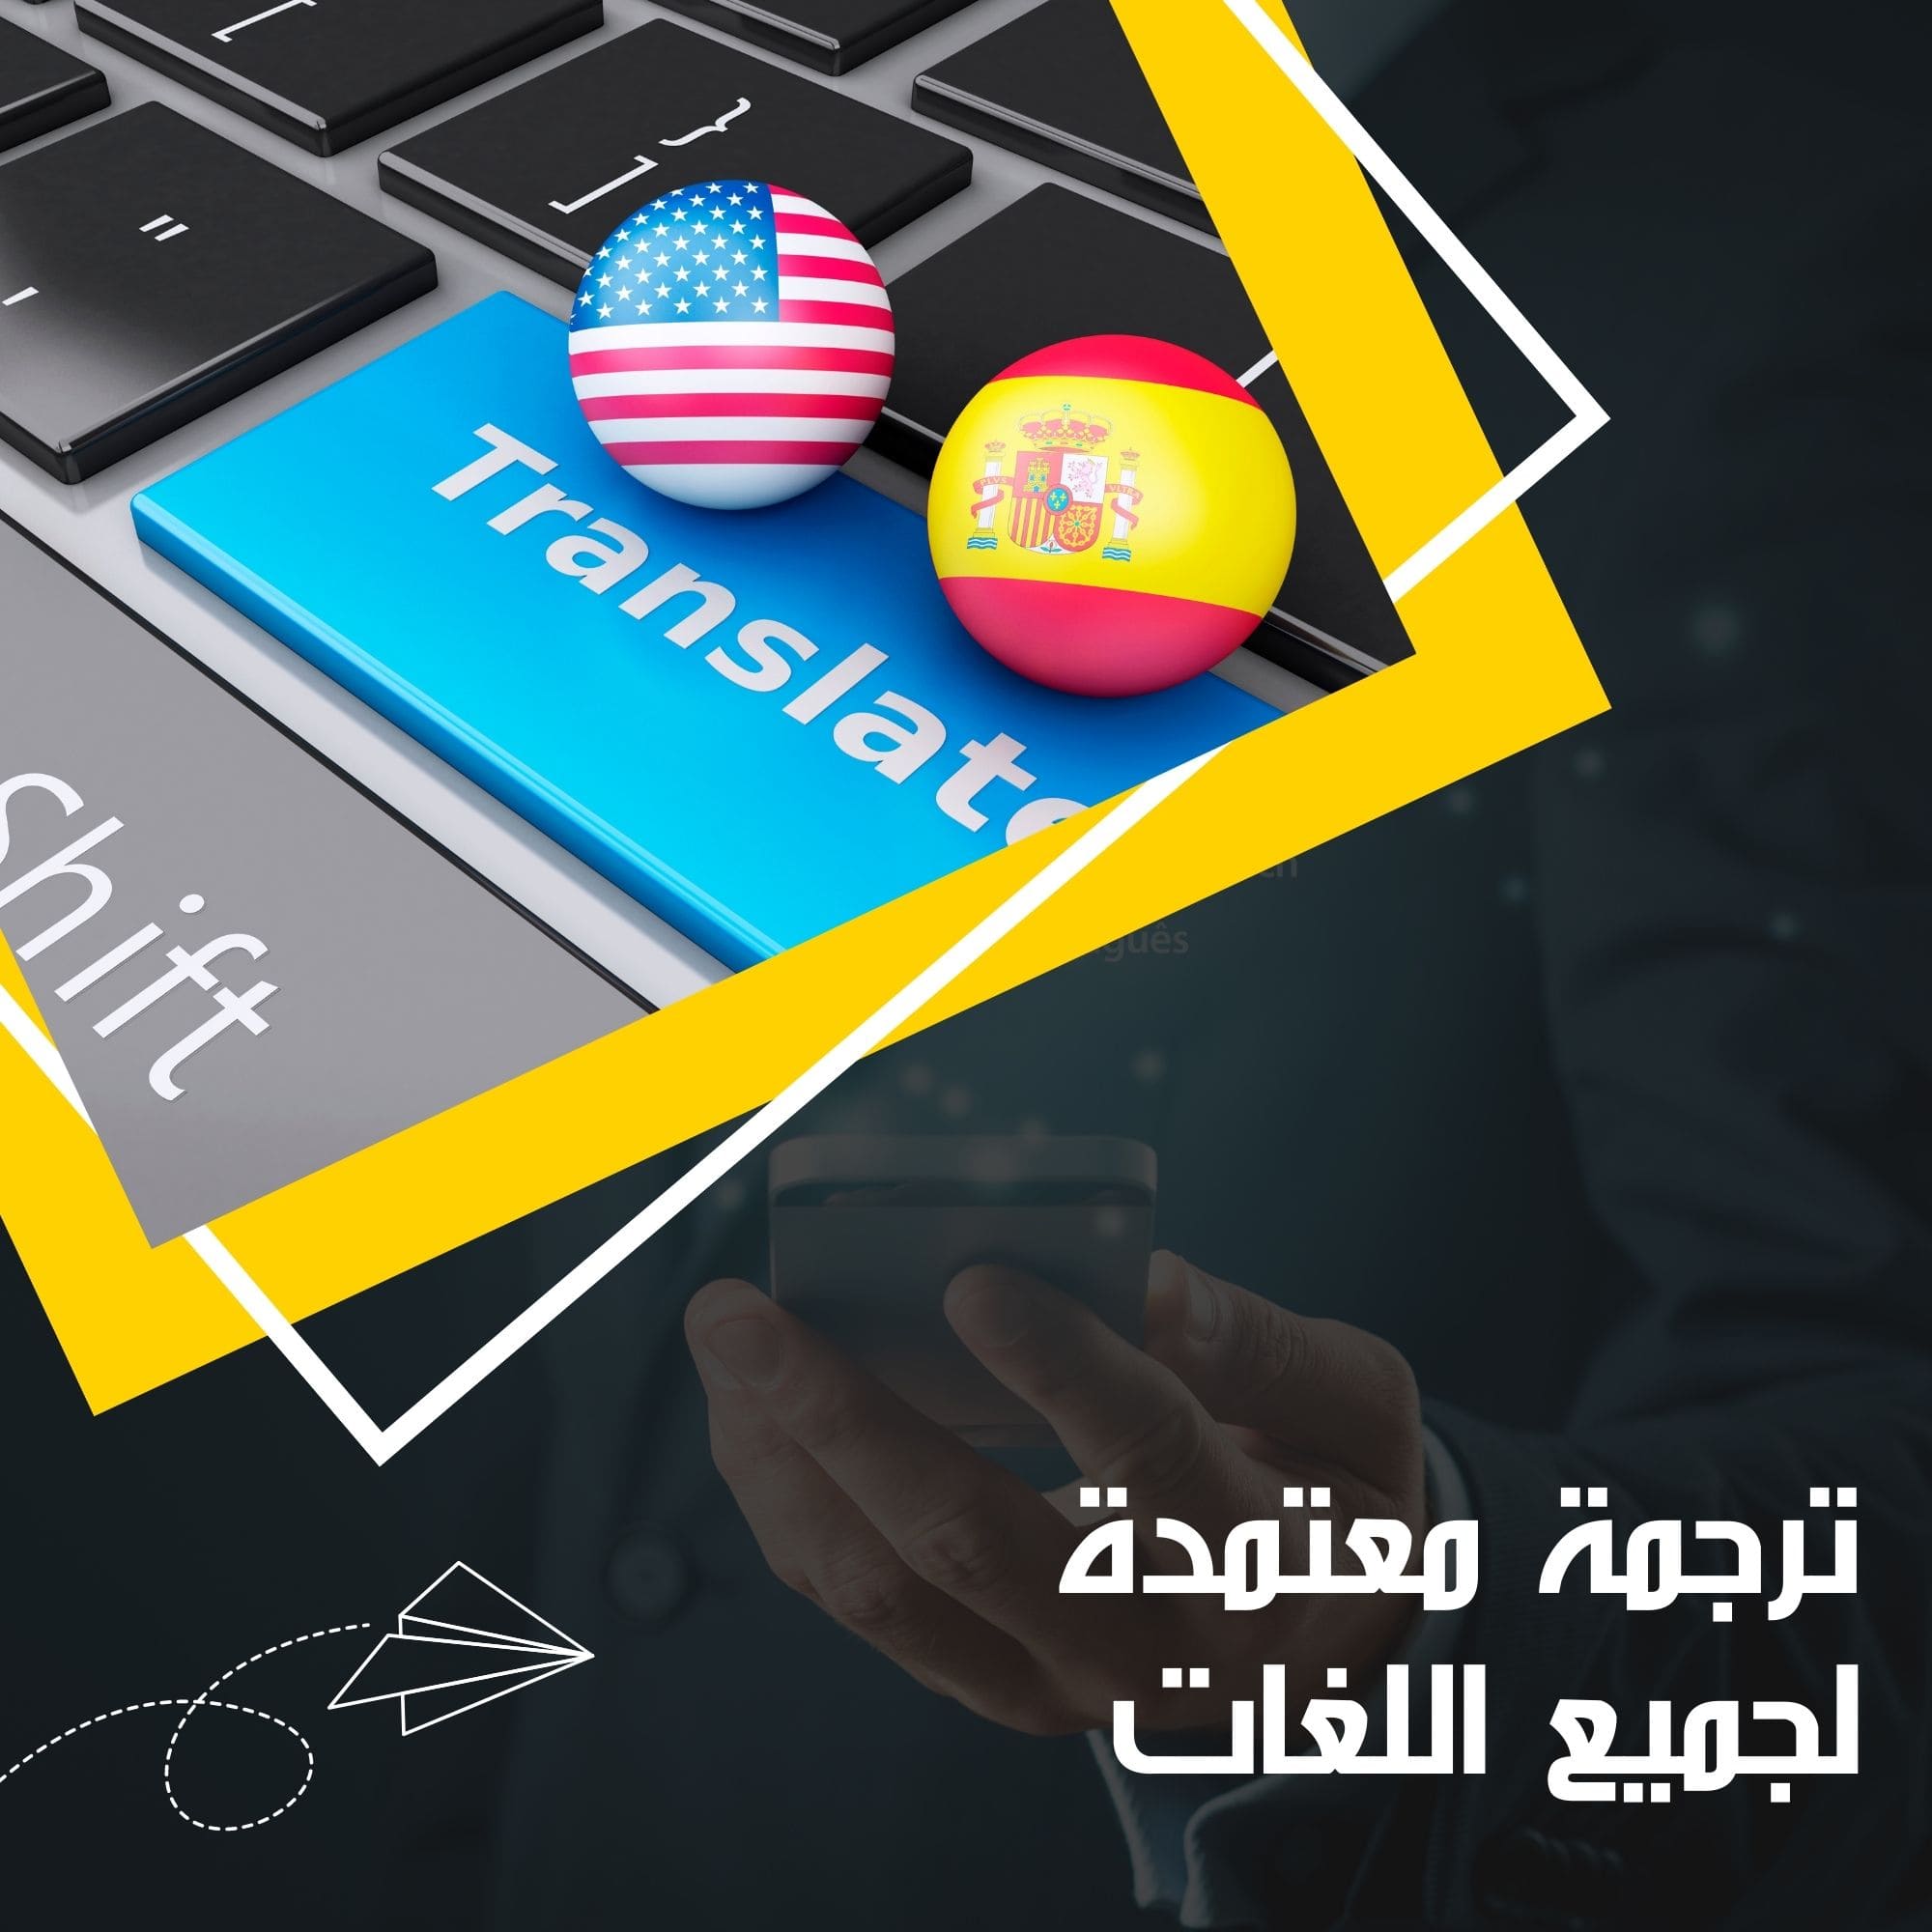 الترجمة من العربية إلى الغوجارتية في مؤسسة روزيتا لخدمات الترجمة 